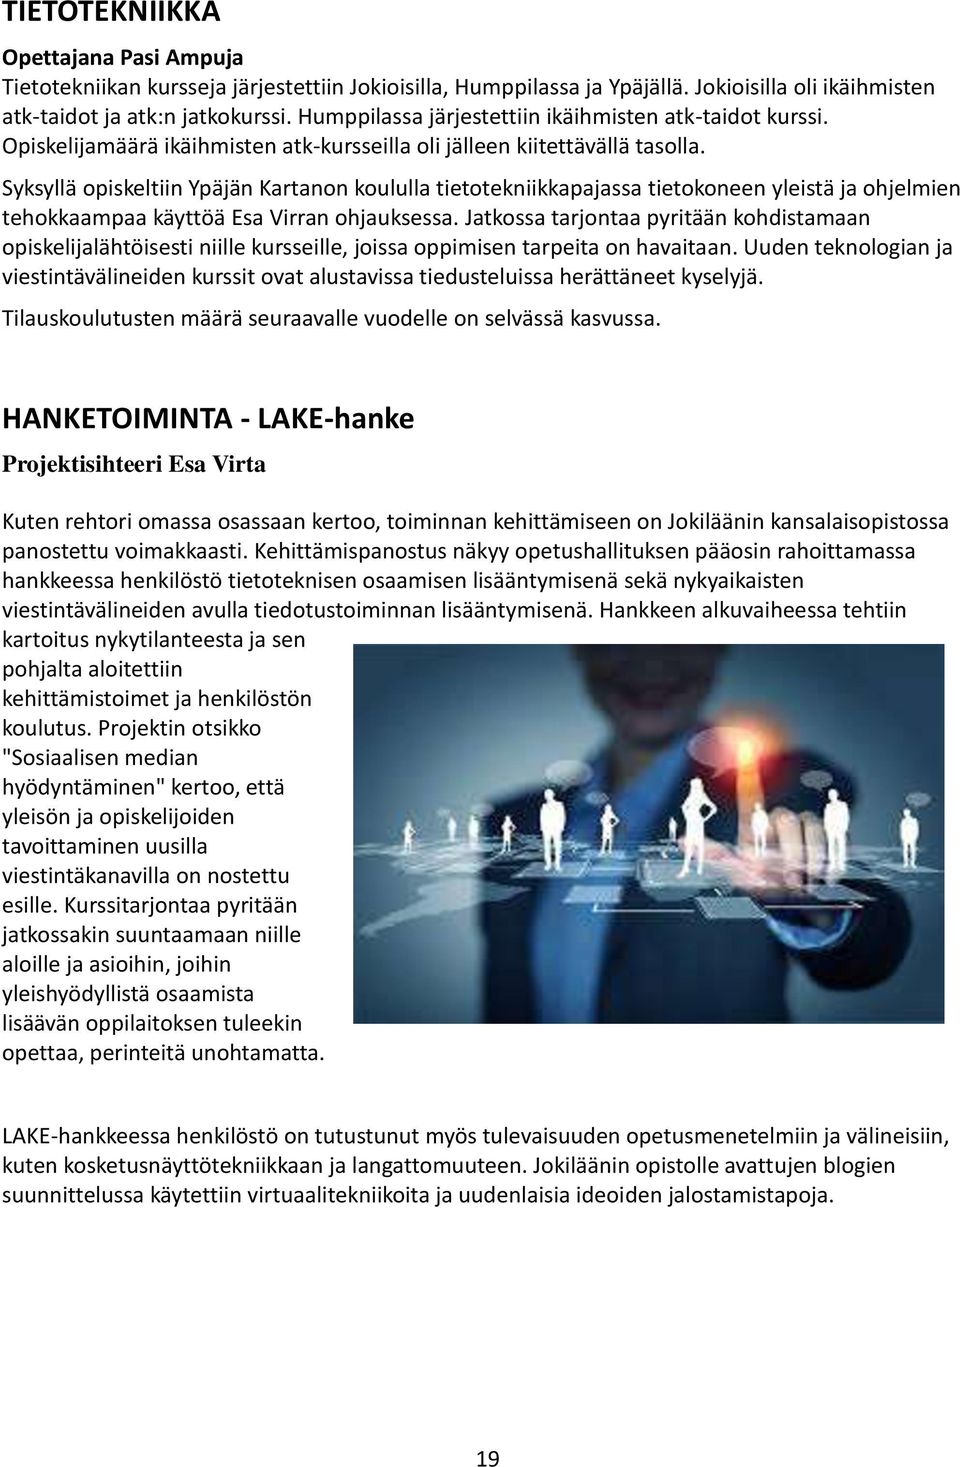 Syksyllä opiskeltiin Ypäjän Kartanon koululla tietotekniikkapajassa tietokoneen yleistä ja ohjelmien tehokkaampaa käyttöä Esa Virran ohjauksessa.